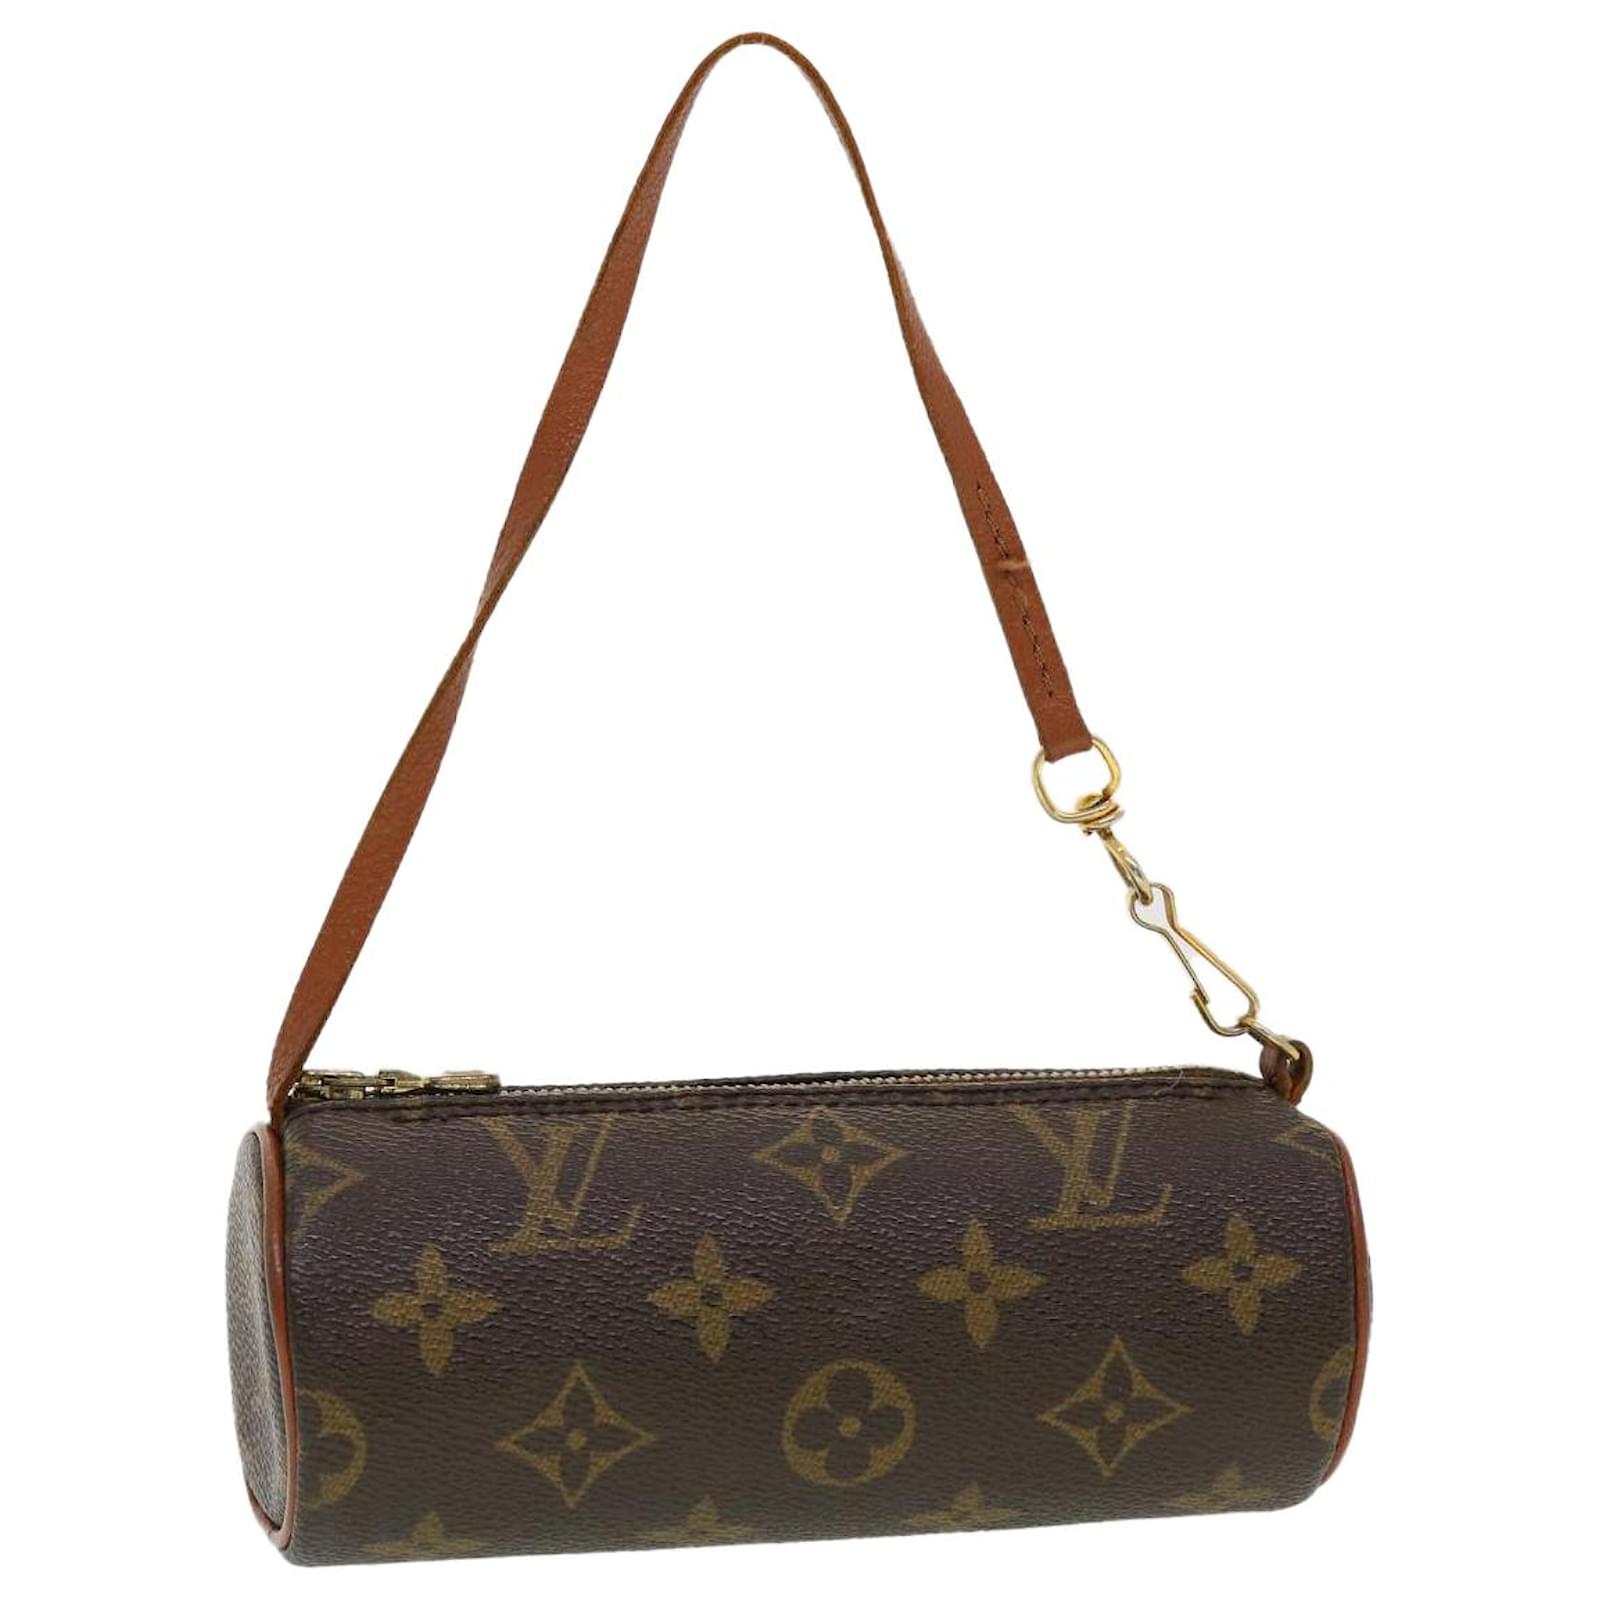 Louis Vuitton LV Monogram Papillon Accessory pouch pochette bag EXCELLENT